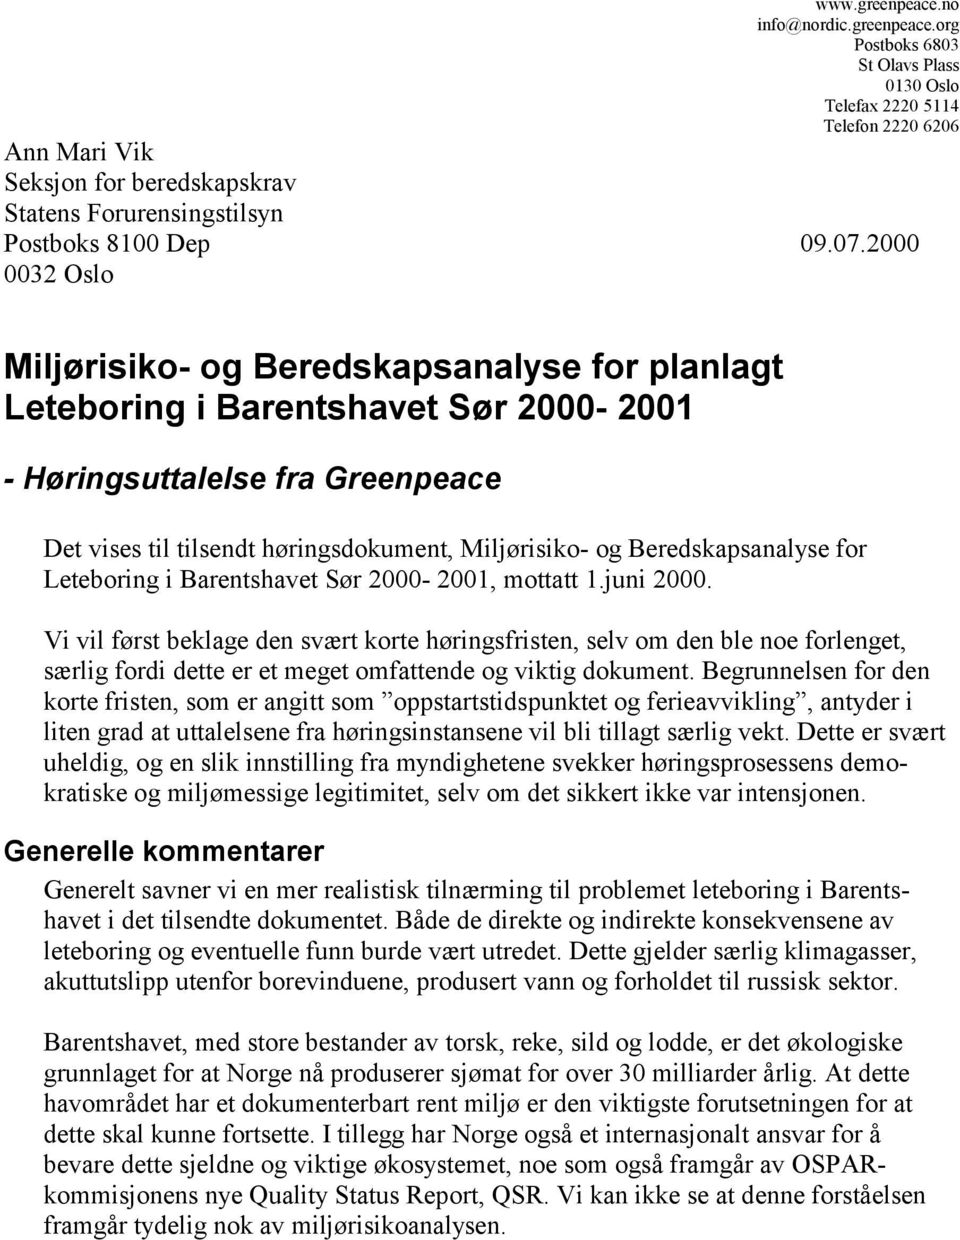 Beredskapsanalyse for Leteboring i Barentshavet Sør 2000-2001, mottatt 1.juni 2000.